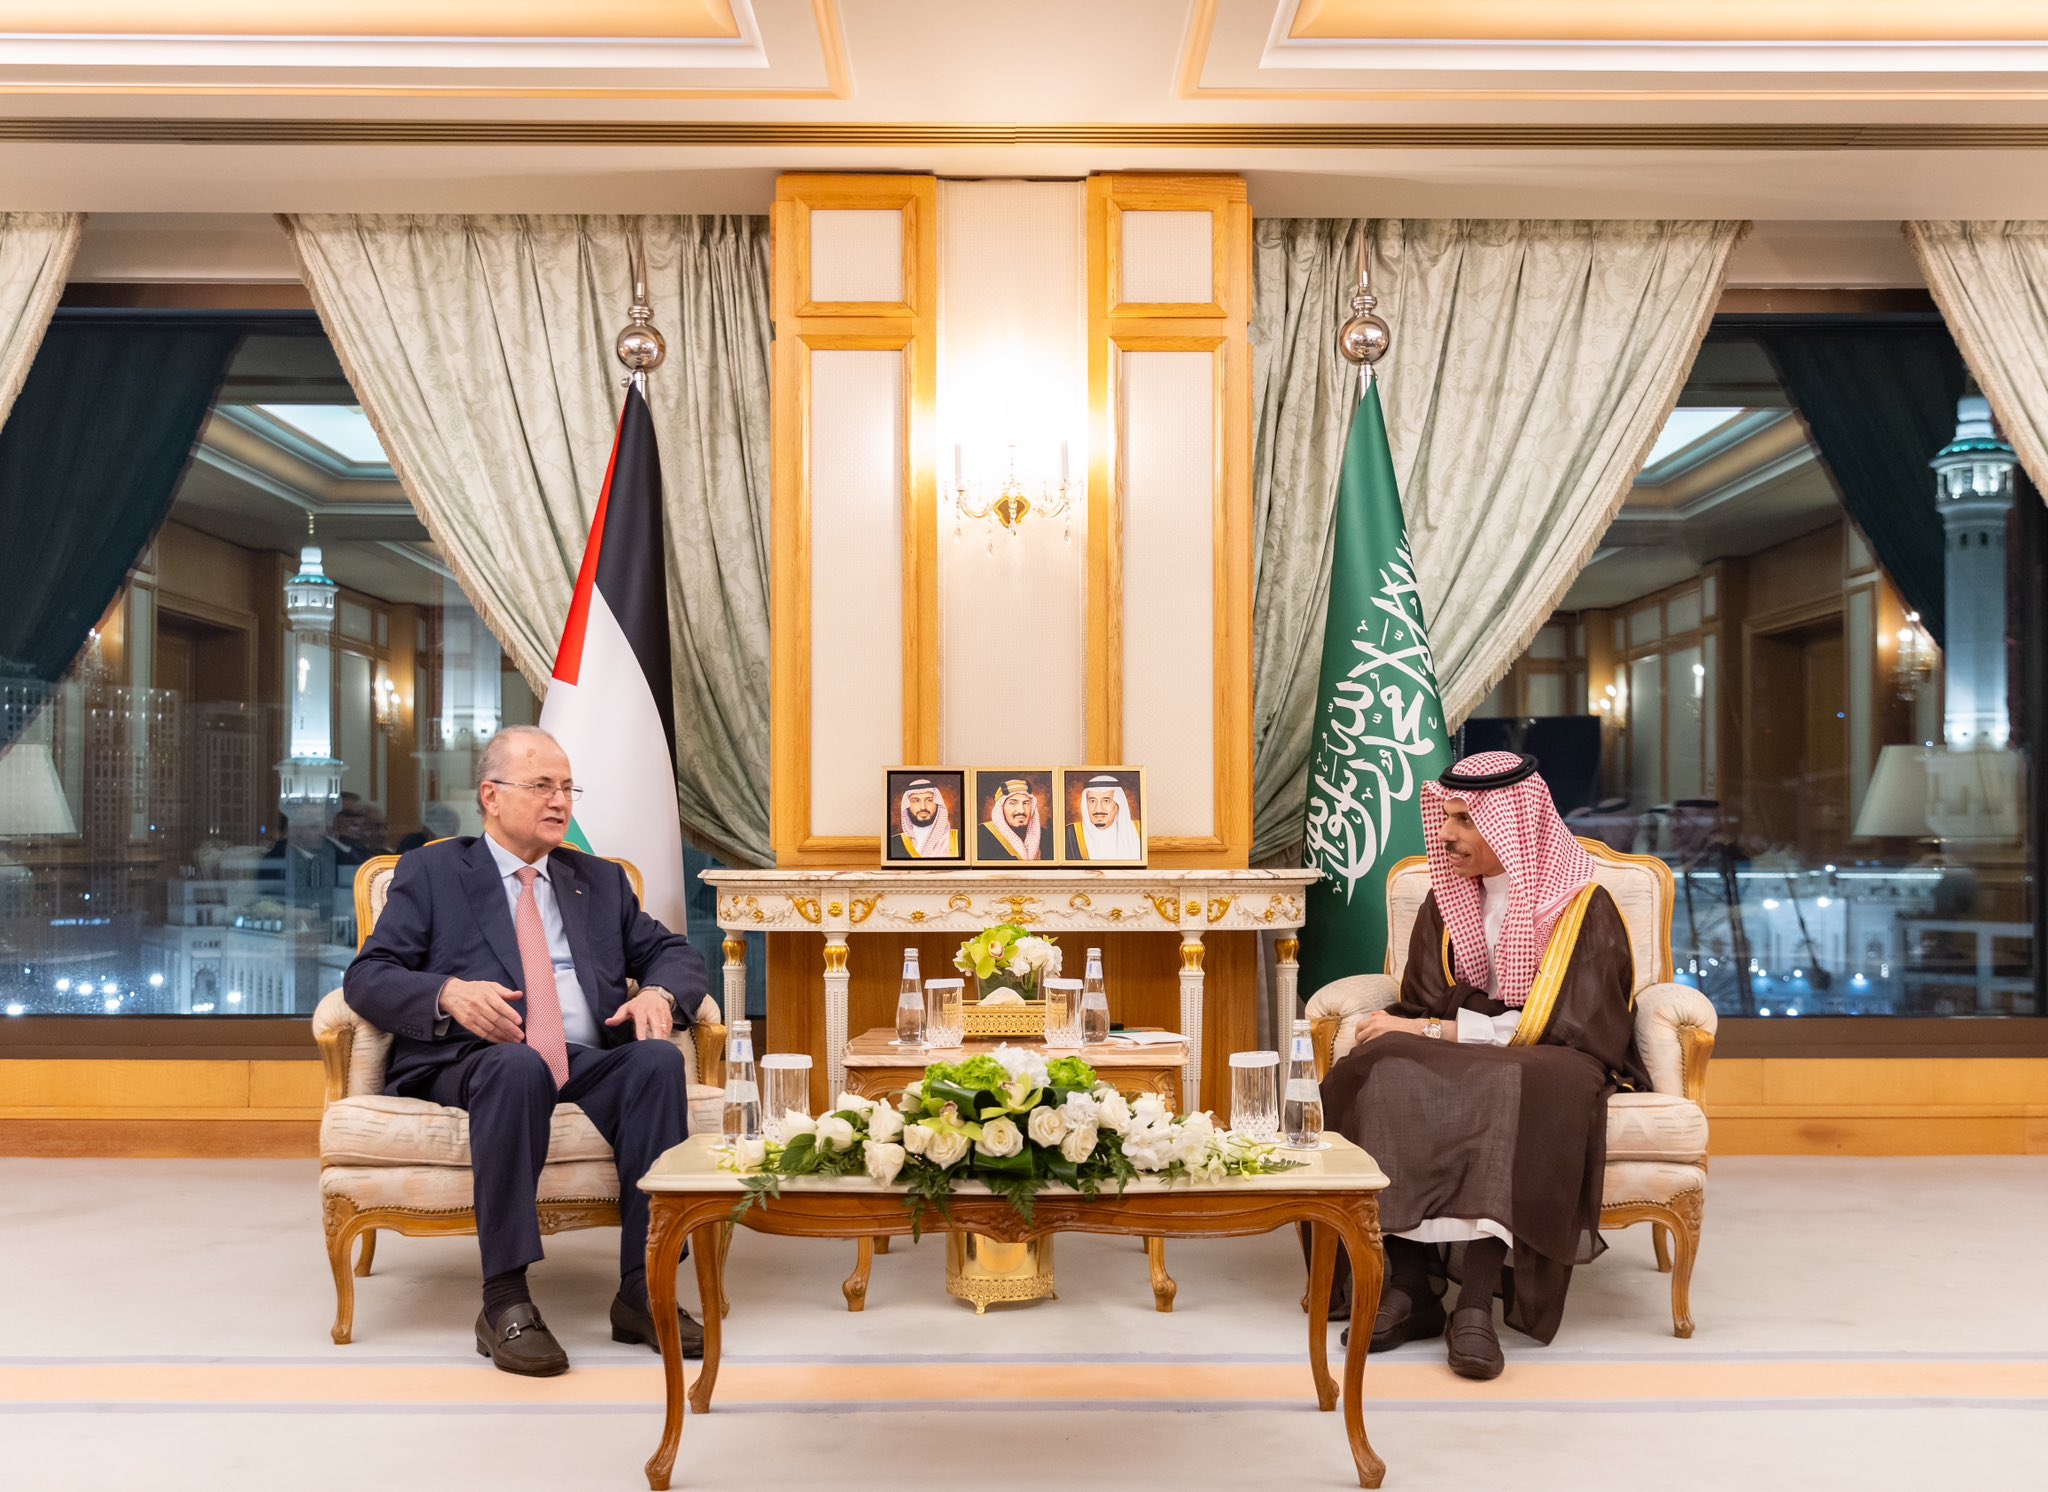  وزير الخارجية السعودي يبحث مع رئيس الوزراء الفلسطيني الأوضاع بالضفة الغربية وغزة